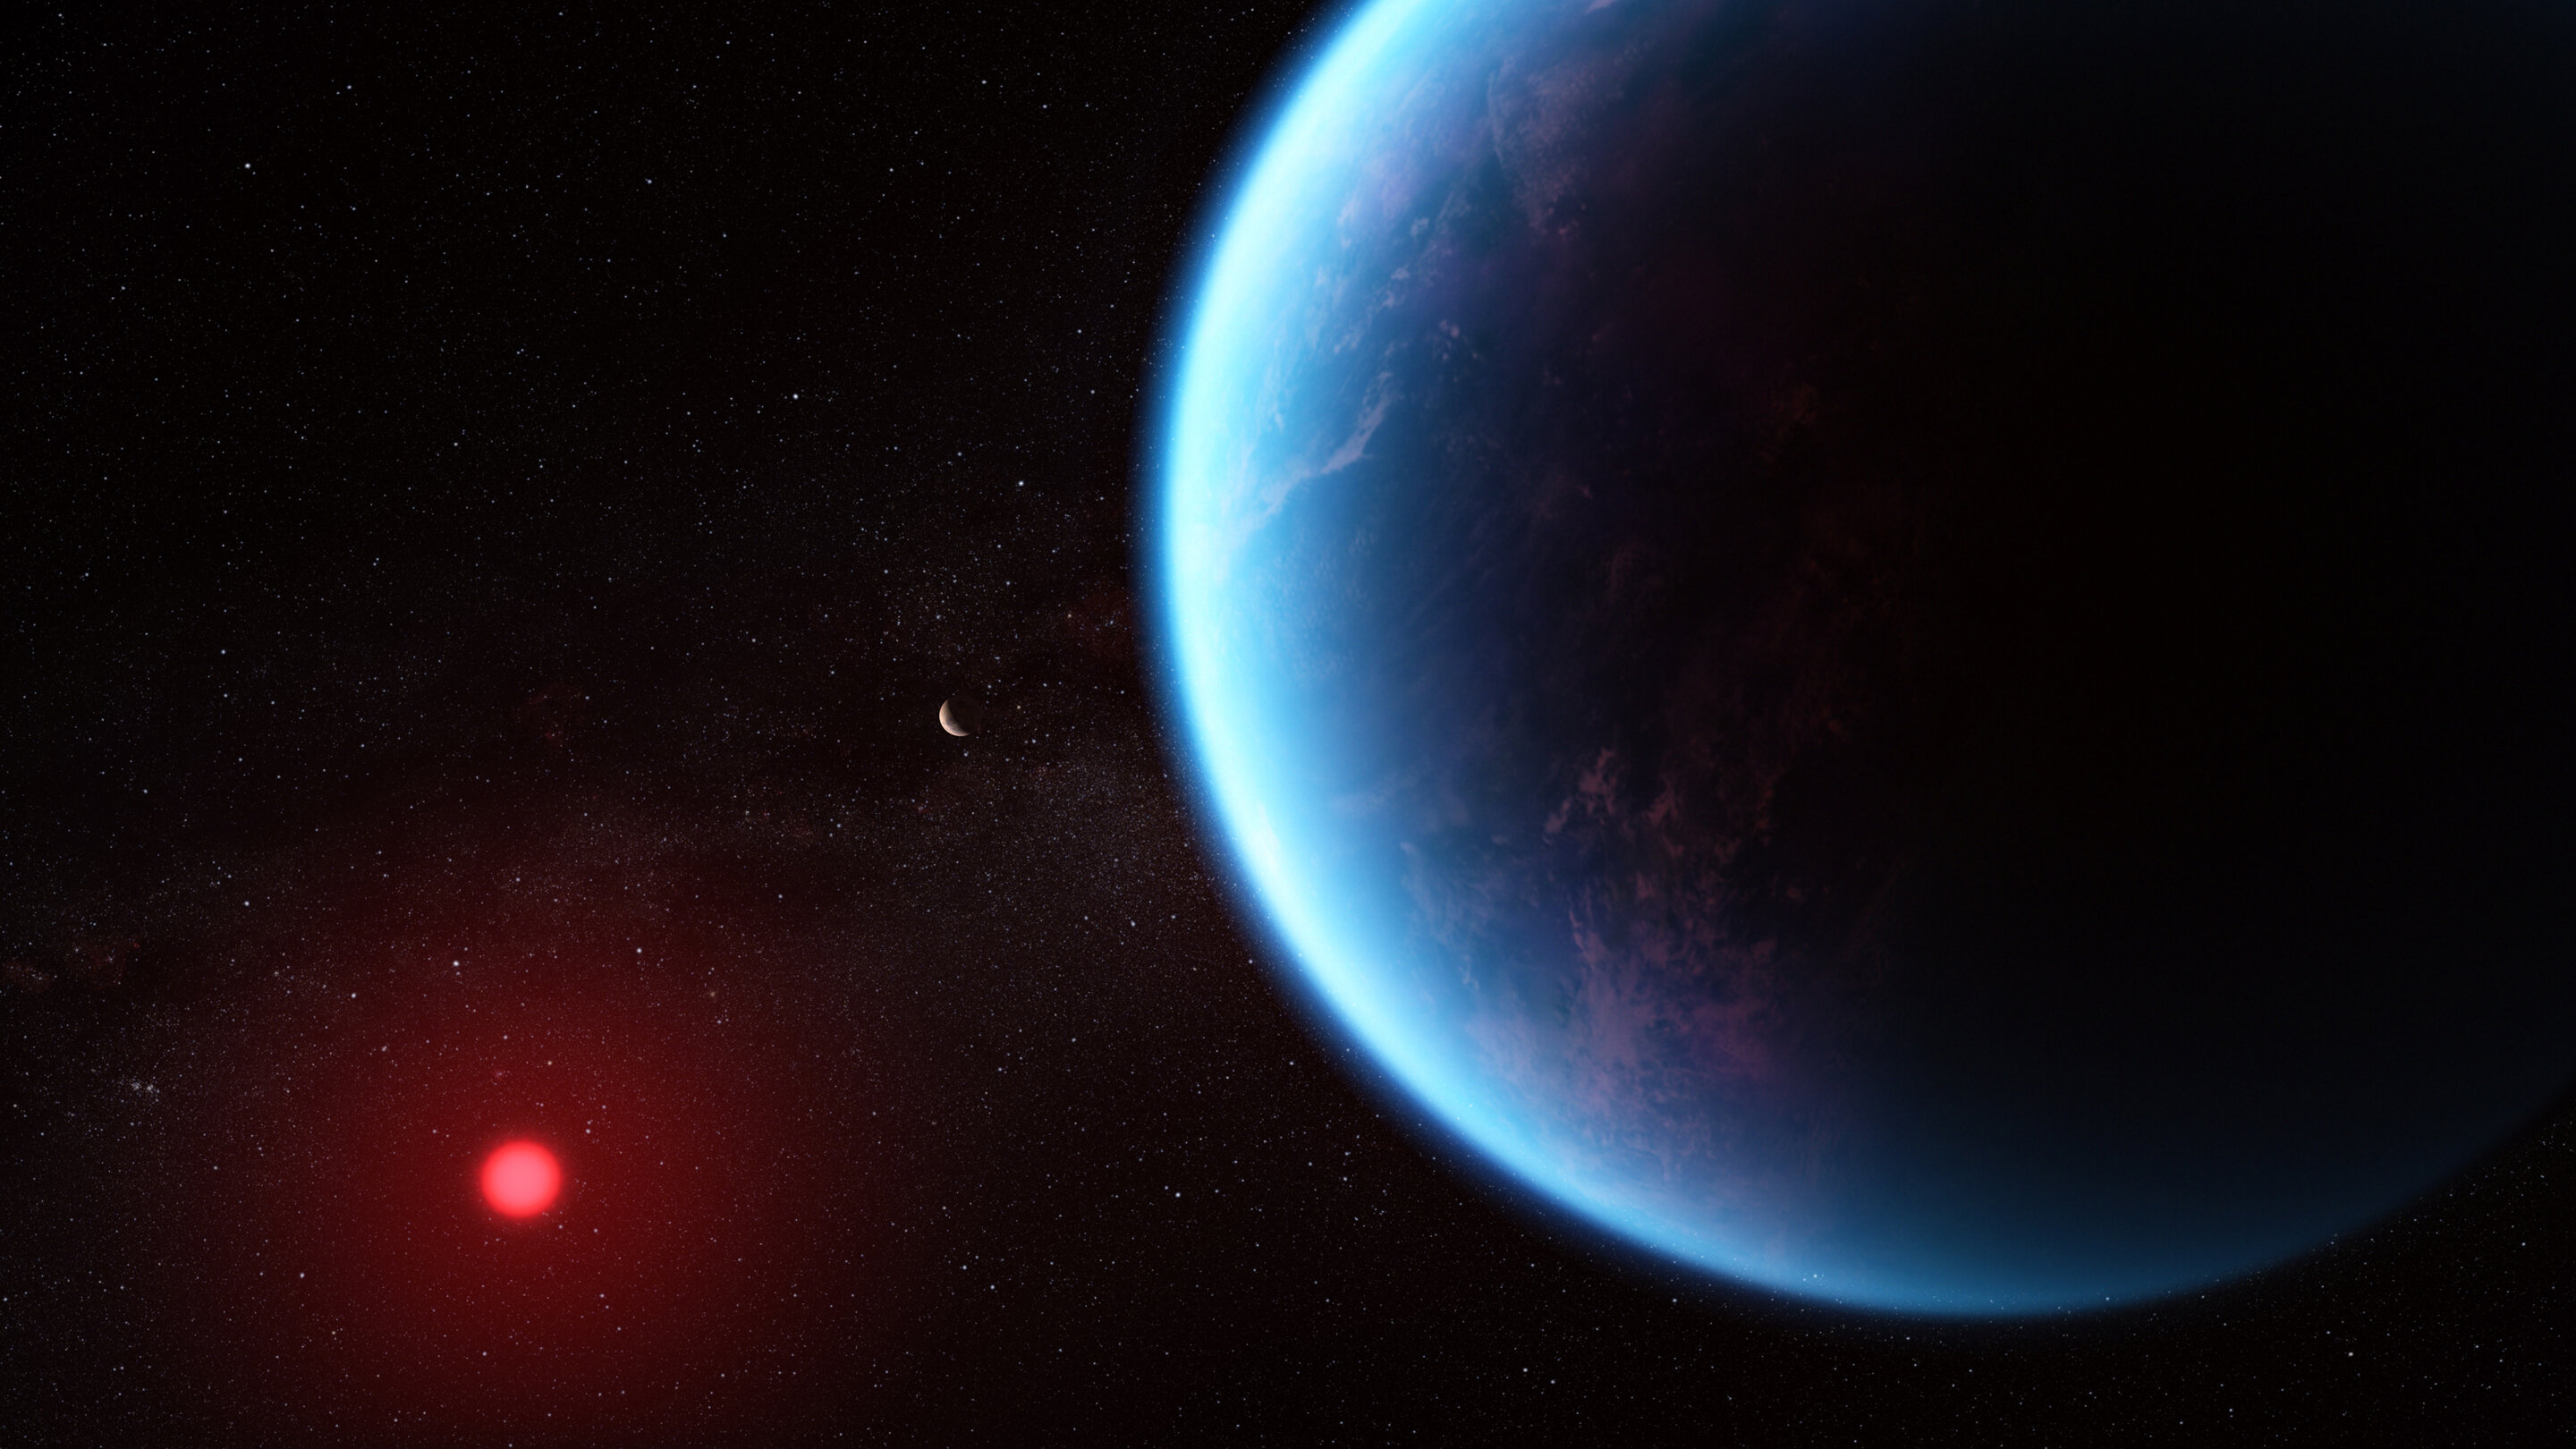 Esta ilustración muestra el aspecto que podría tener el exoplaneta K2-18 b según los datos científicos. K2-18 b, un exoplaneta 8,6 veces más masivo que la Tierra, orbita alrededor de la estrella enana fría K2-18 en la zona habitable y se encuentra a 120 años luz de la Tierra. Una nueva investigación realizada con el telescopio espacial James Webb de la NASA sobre K2-18 b, un exoplaneta 8,6 veces más masivo que la Tierra, ha revelado la presencia de moléculas que contienen carbono, como metano y dióxido de carbono. La abundancia de metano y dióxido de carbono, y la escasez de amoníaco, apoyan la hipótesis de que puede haber un océano de agua bajo una atmósfera rica en hidrógeno en K2-18 b. En esta ilustración, el exoplaneta K2-18 c se muestra entre K2-18 b y su estrella. Crédito: Ilustración: NASA, ESA, CSA, Joseph Olmsted (STScI); Ciencia: Nikku Madhusudhan (IoA)